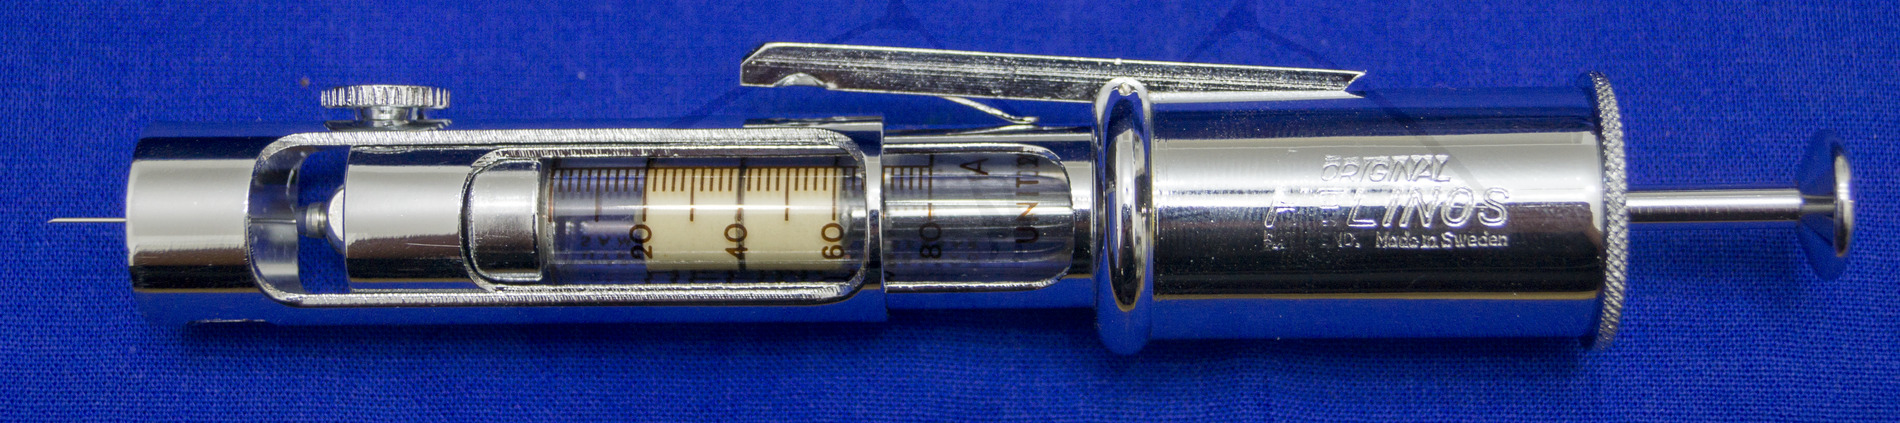 Insulininjektor "Helinos", Mitte der 1950'er Jahre, Ausgelöster Injektor, eingestellt auf 20 Insulineinheiten. Über eine Stellschraube kann die Einstichtiefe reguliert werden